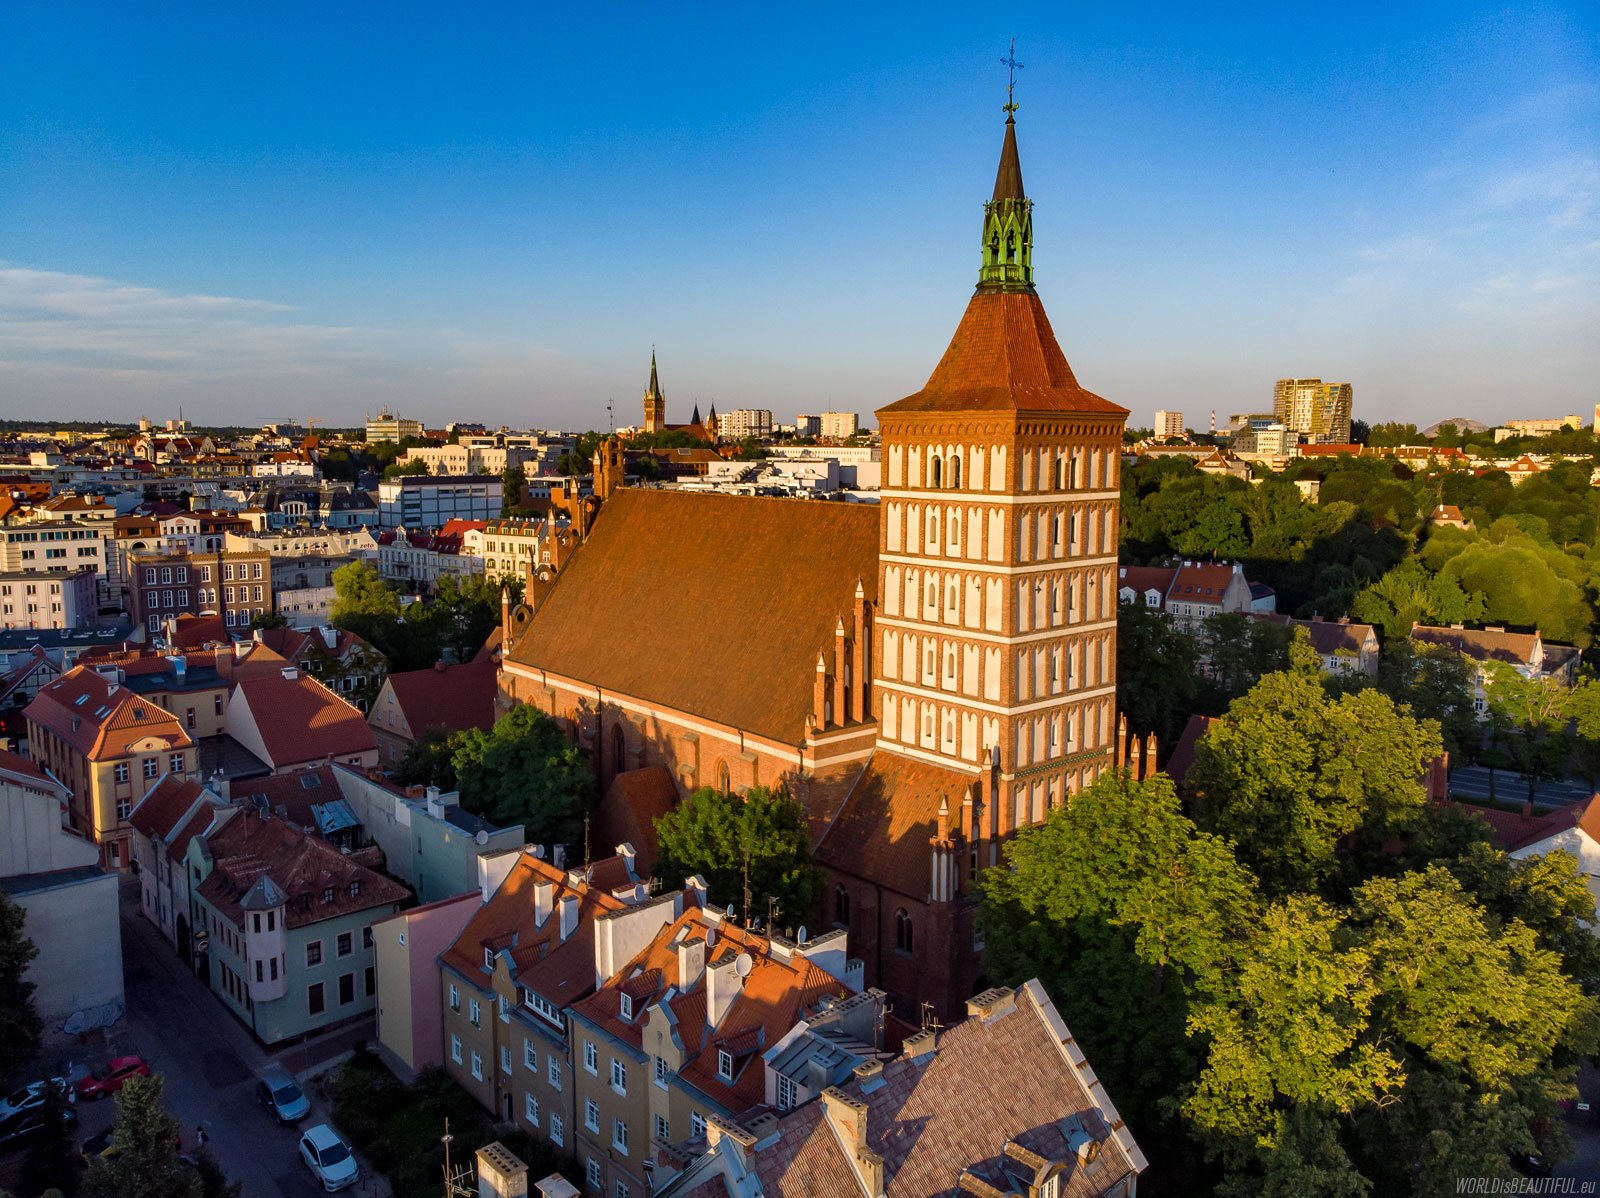 Katedra w Olsztynie